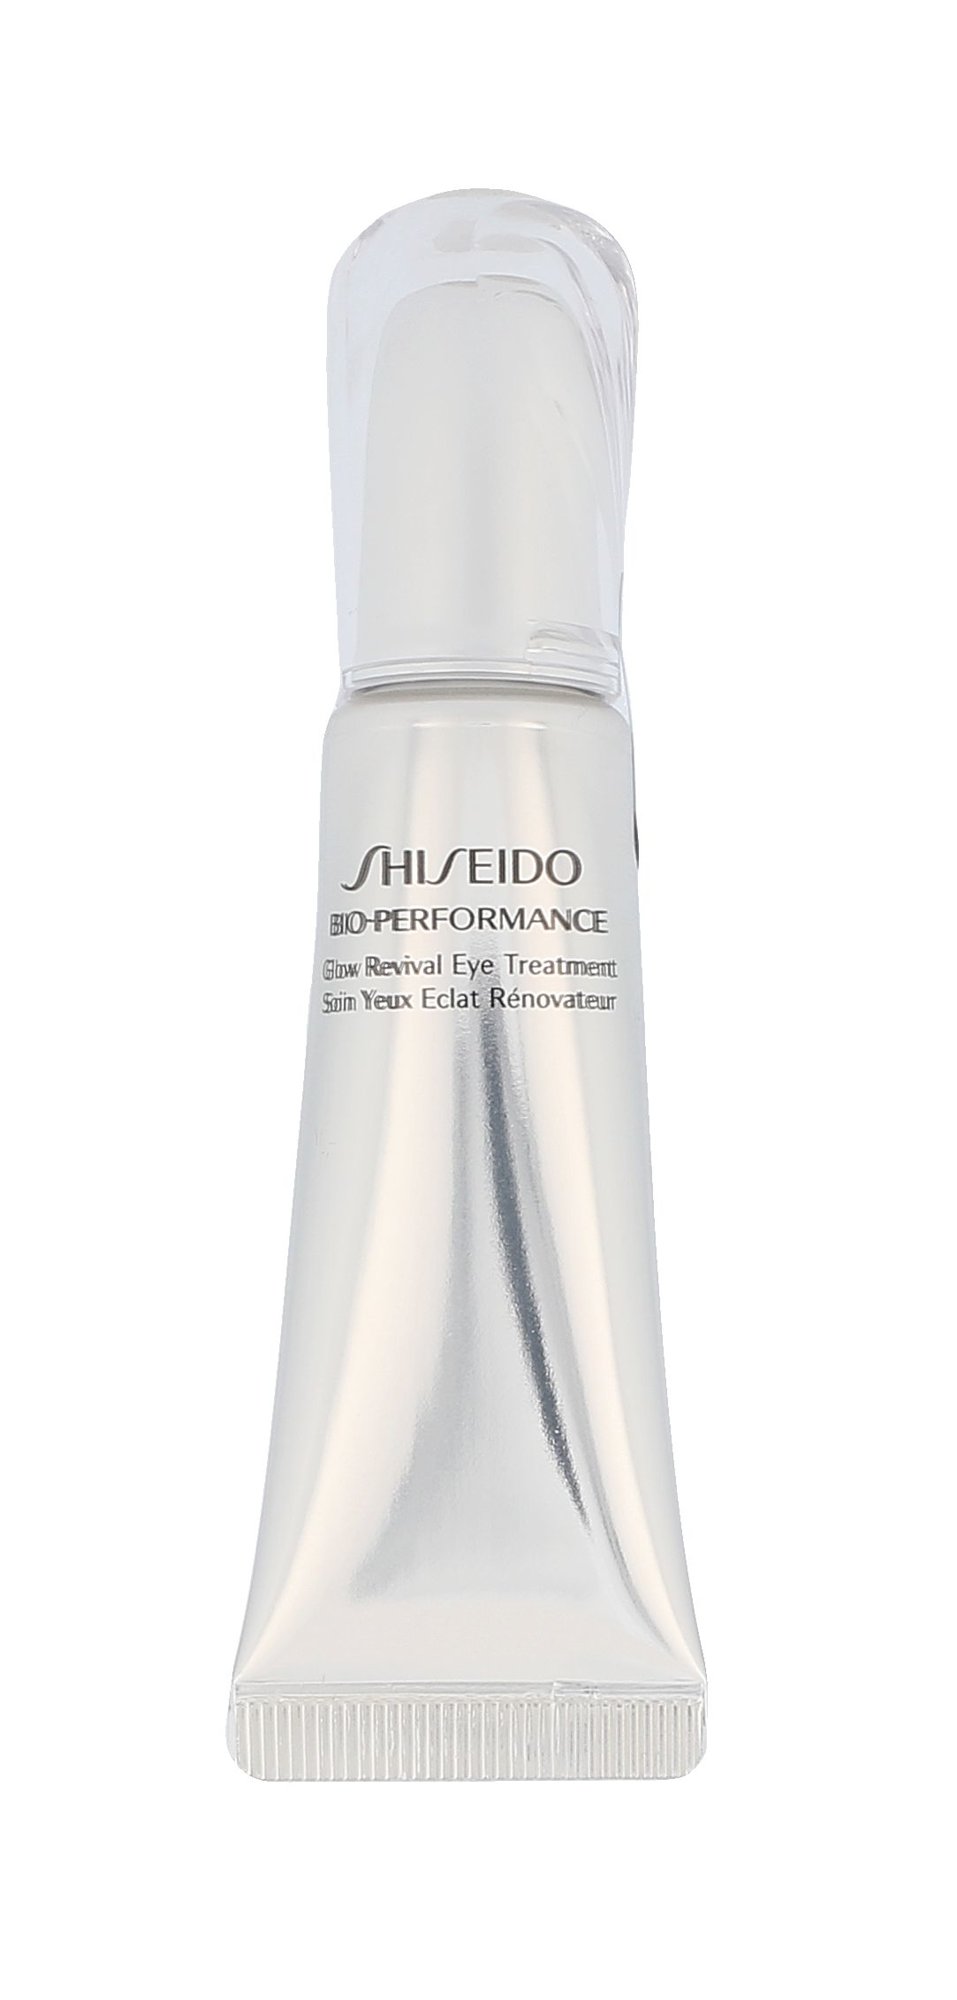 Shiseido Bio-Performance Glow Revival Eye Treatment paakių kremas